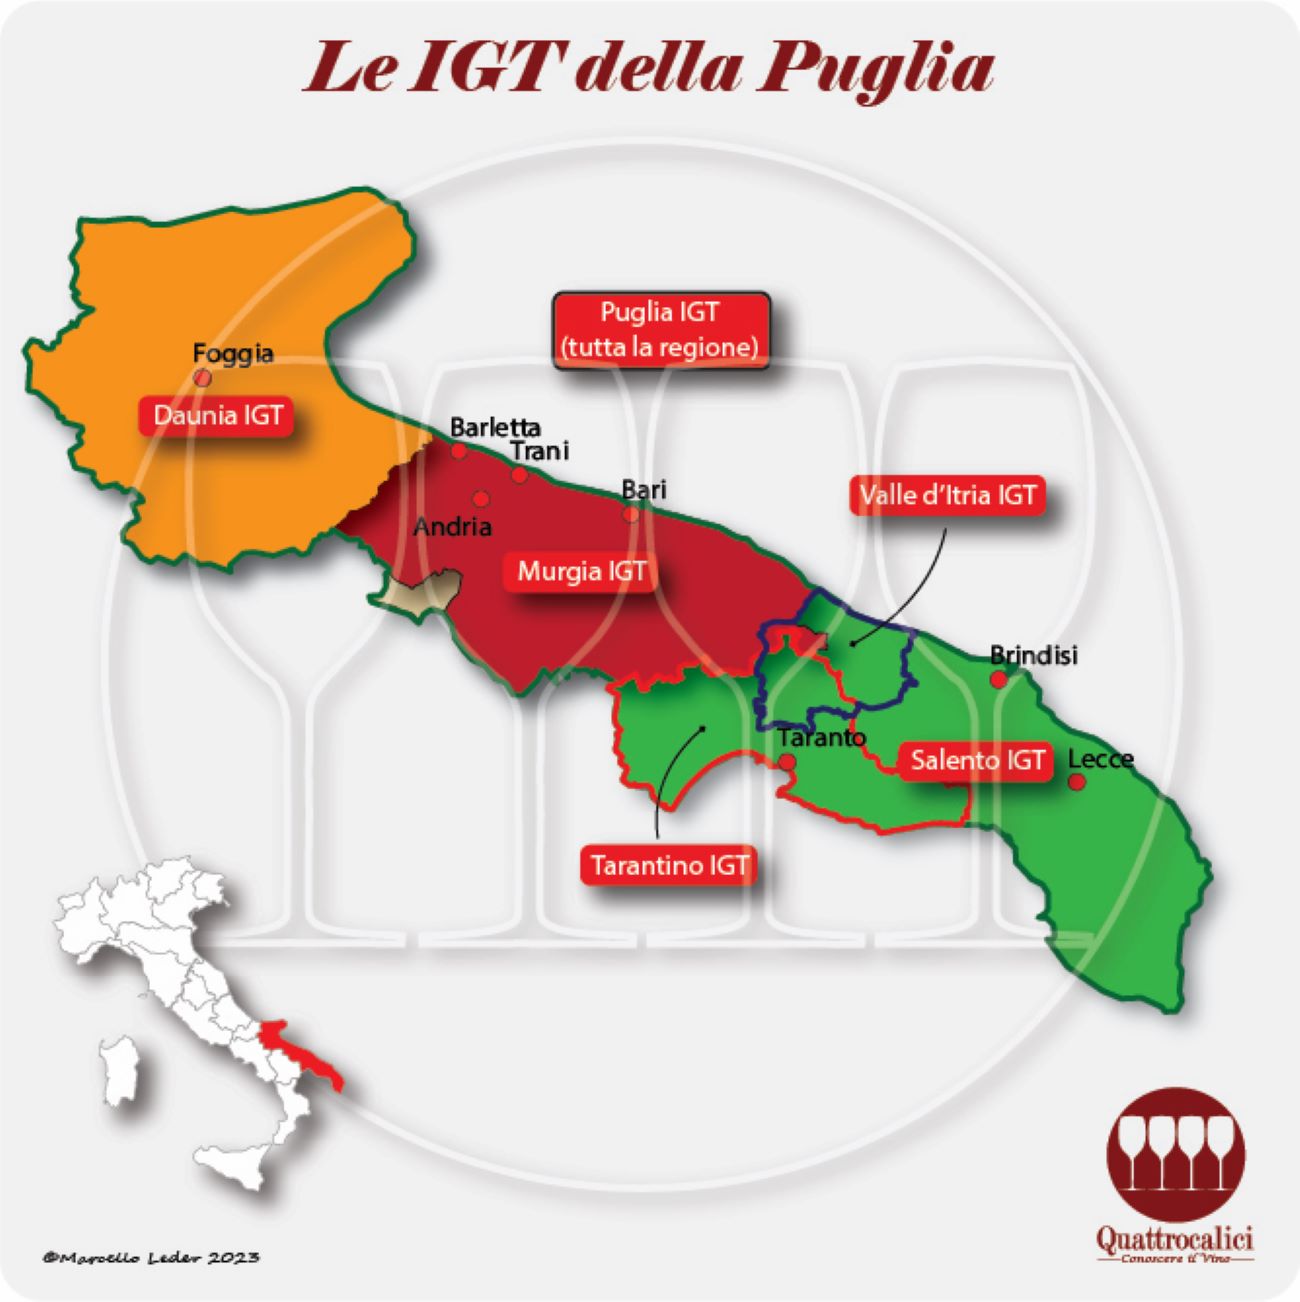 Le IGT della Puglia